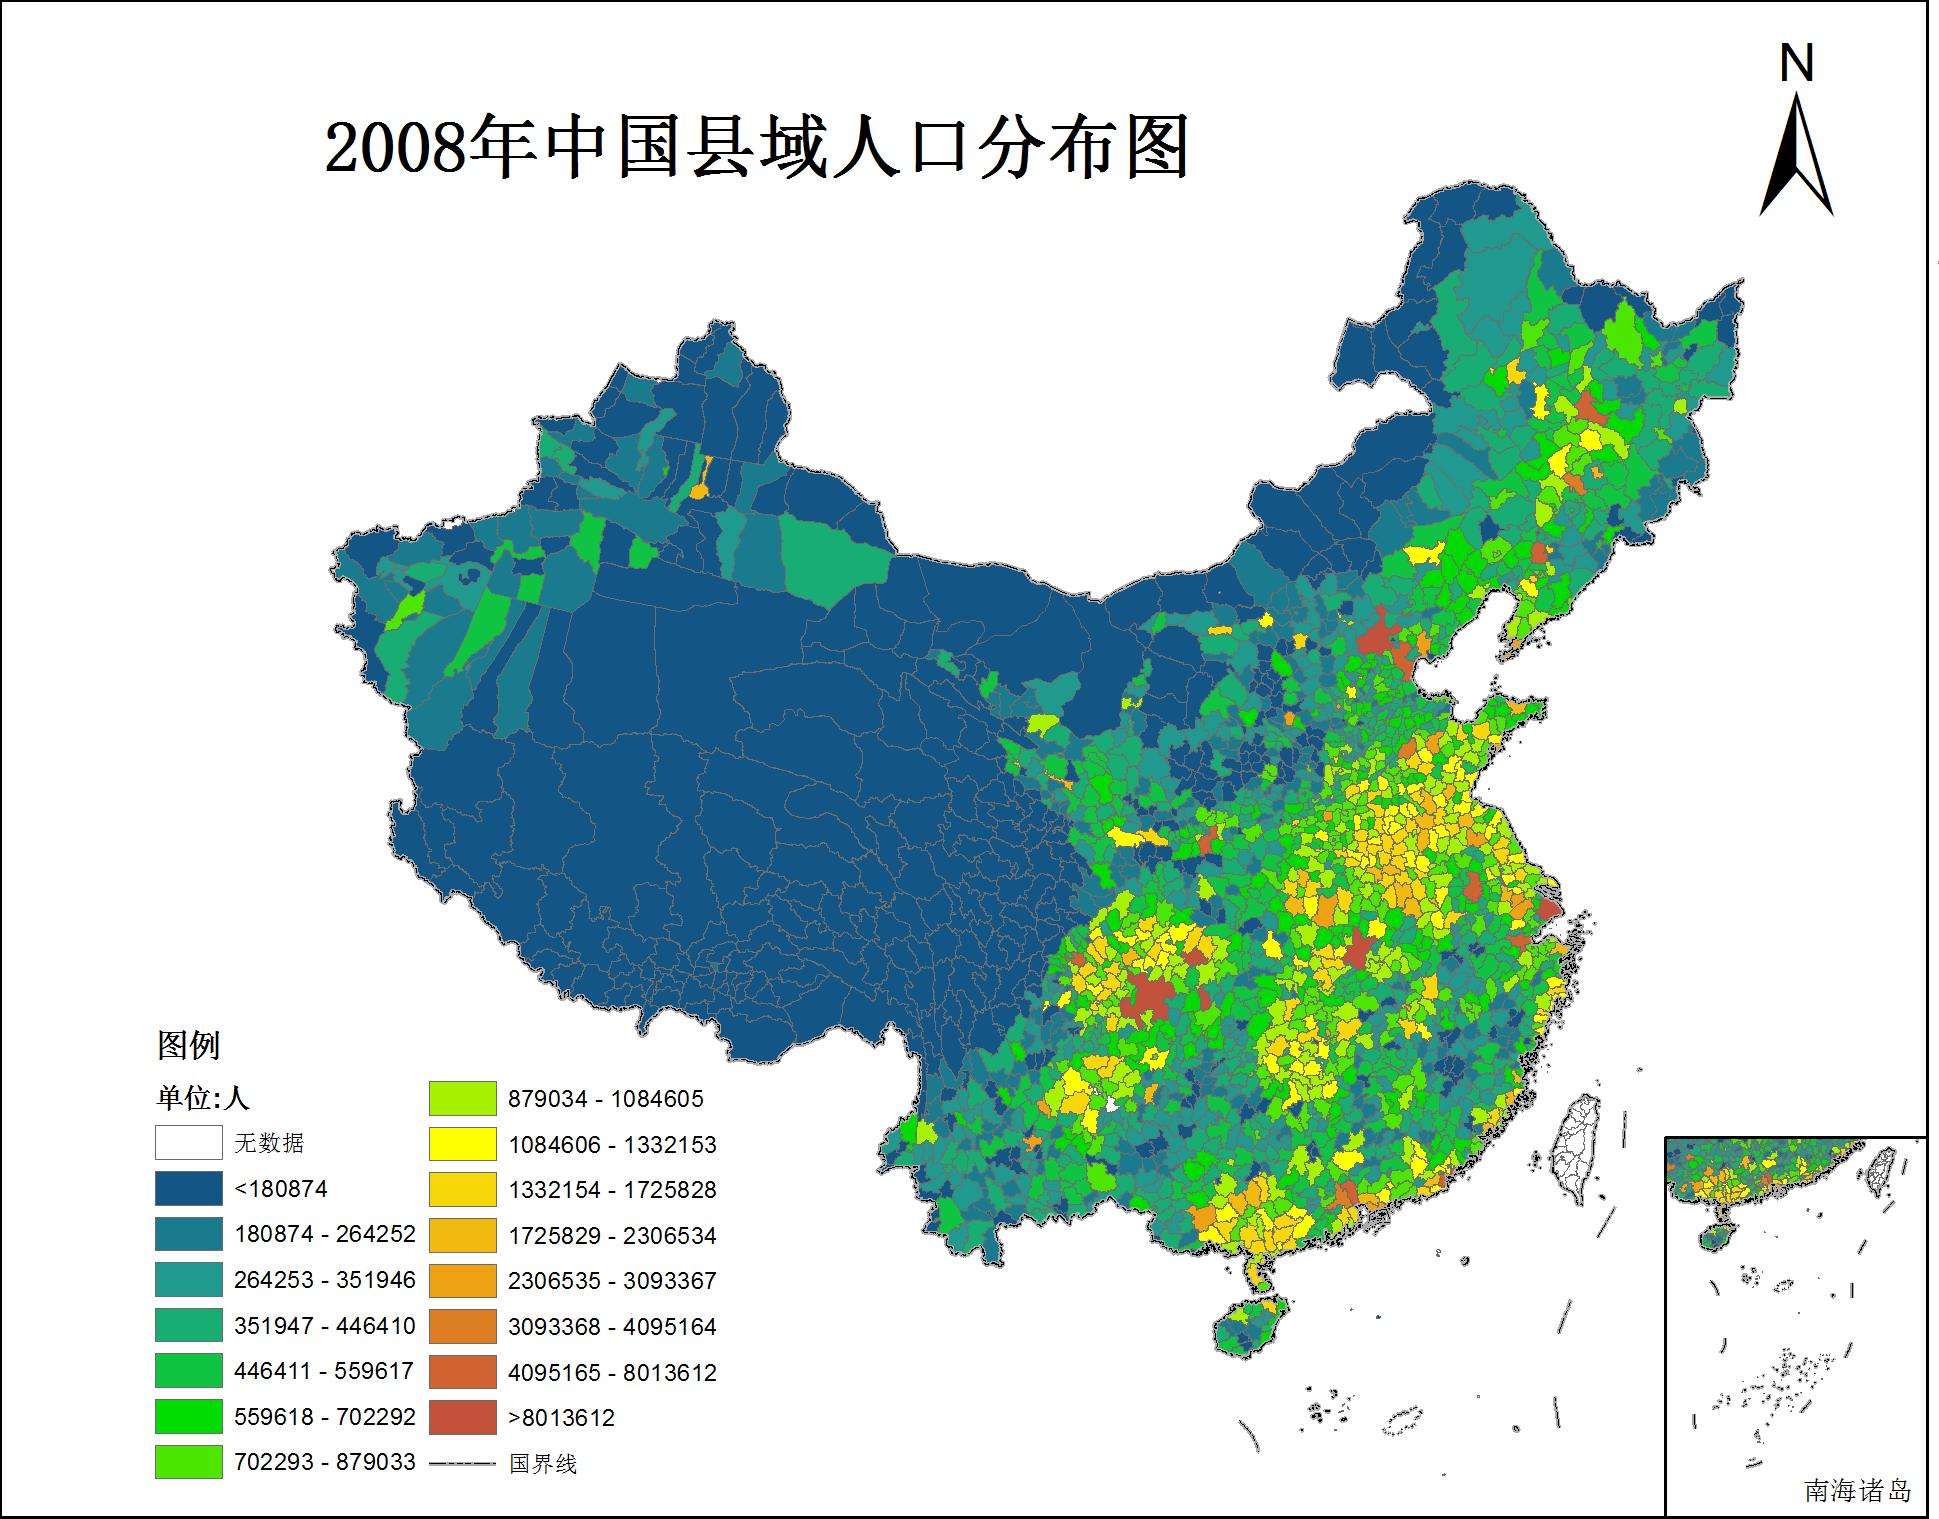 2008-2010年中国县域人口数据集